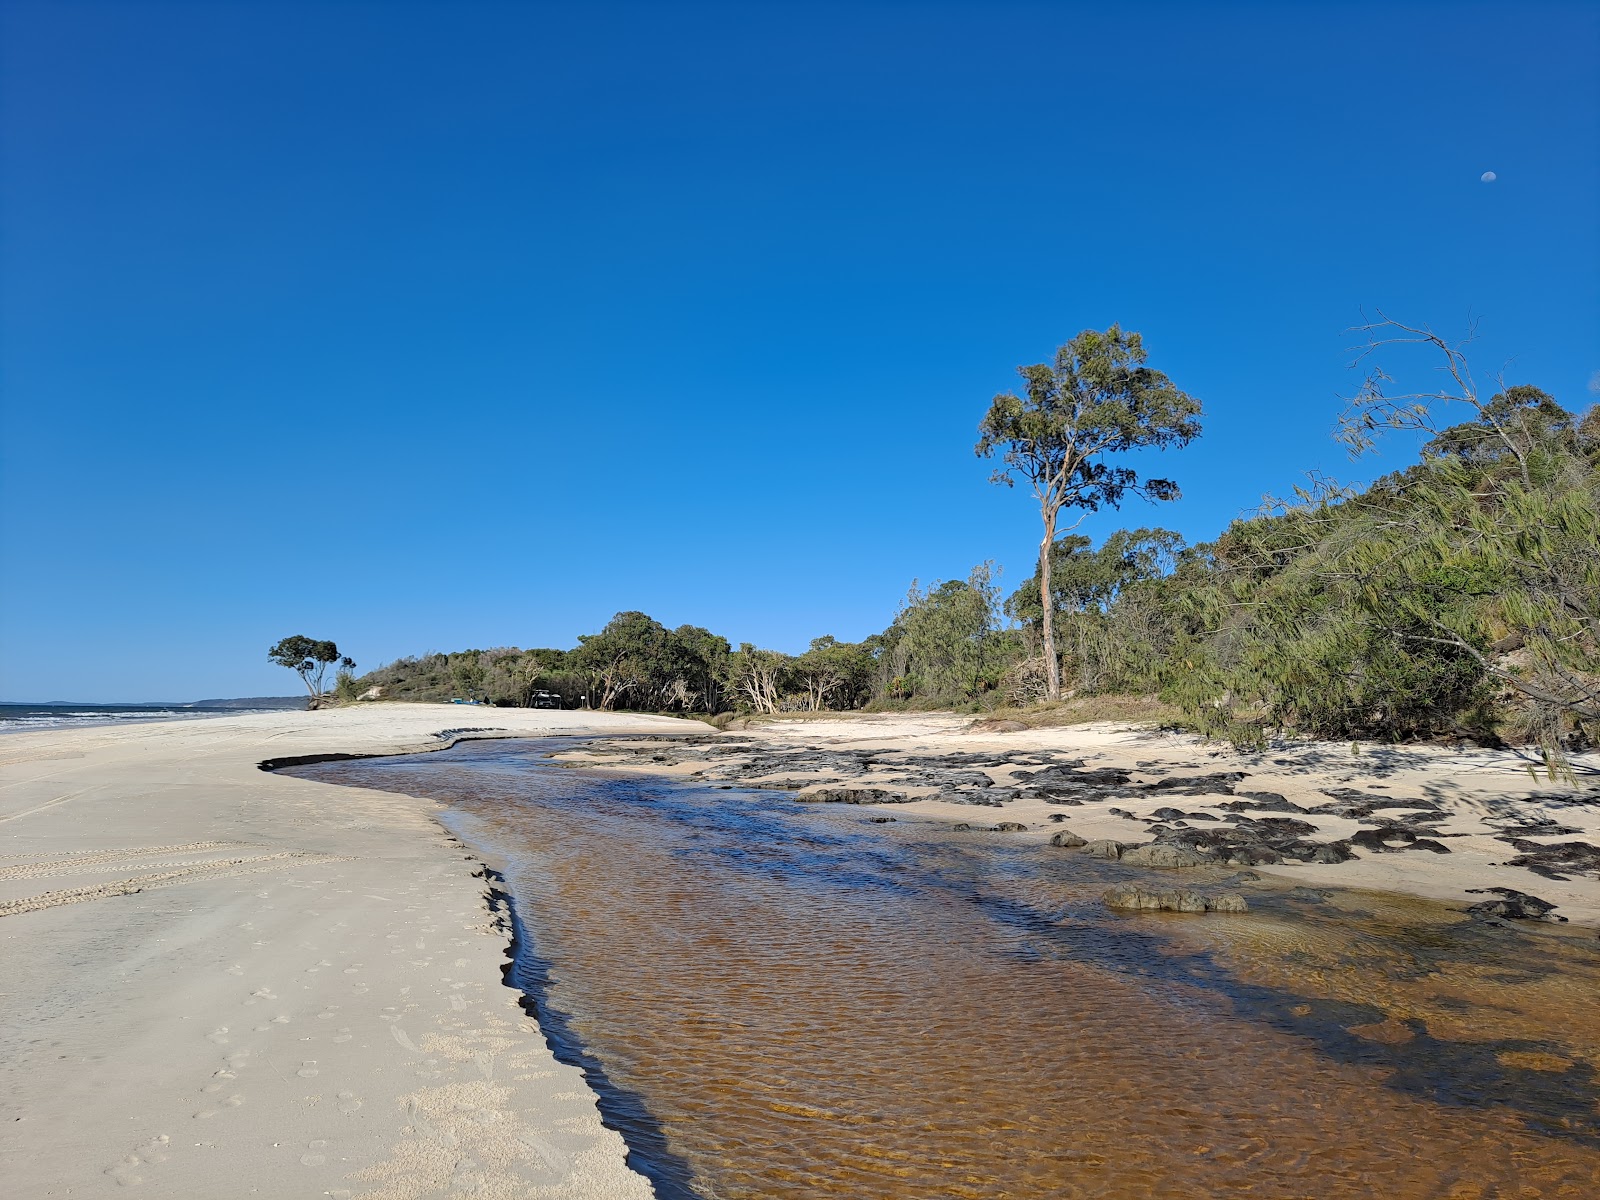 Fotografie cu Bowarrady Creek Beach cu o suprafață de nisip strălucitor